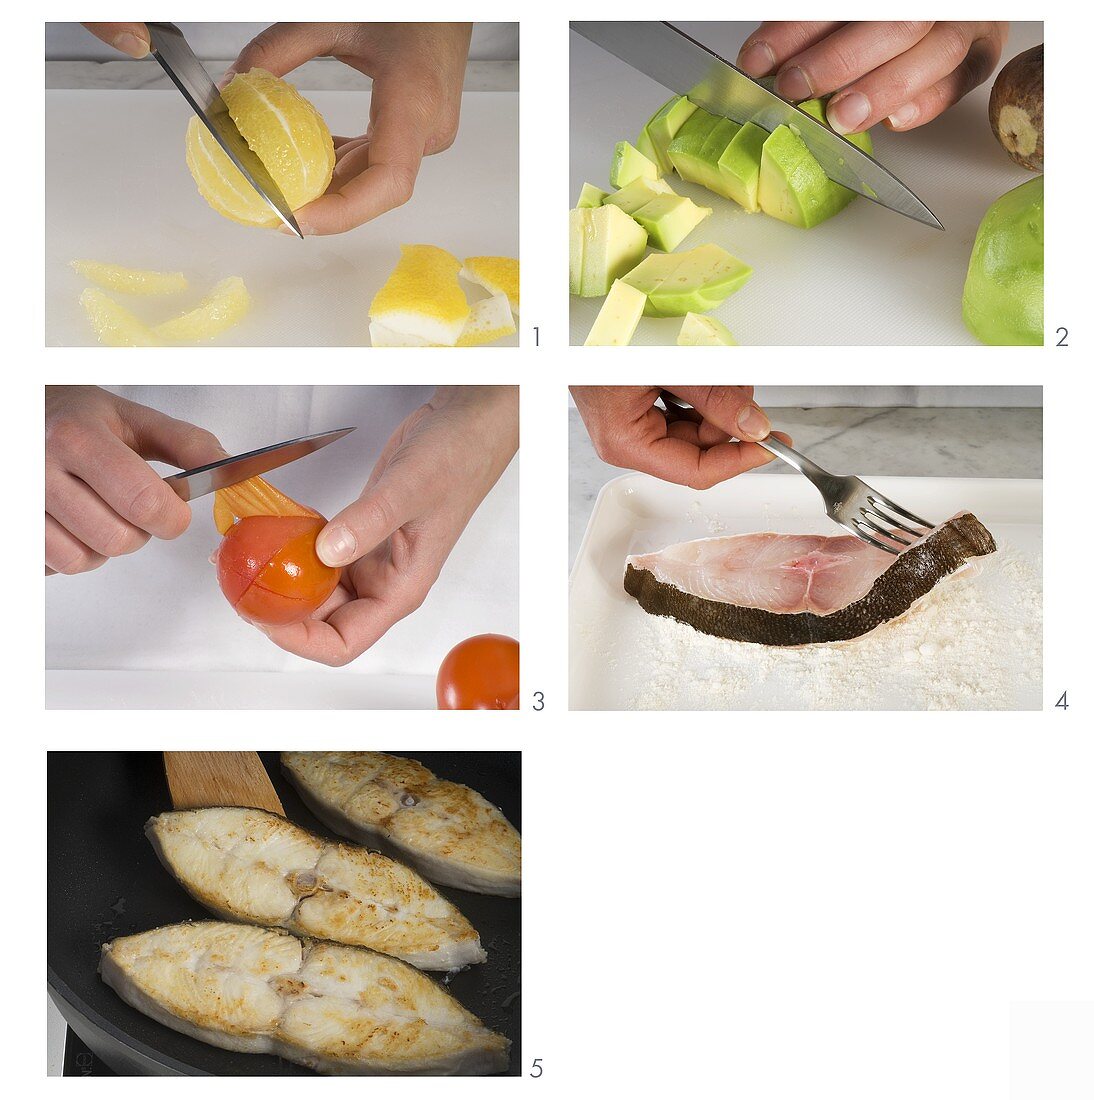 Heilbuttfilet mit Zitronen und Avocado-Tomatengemüse